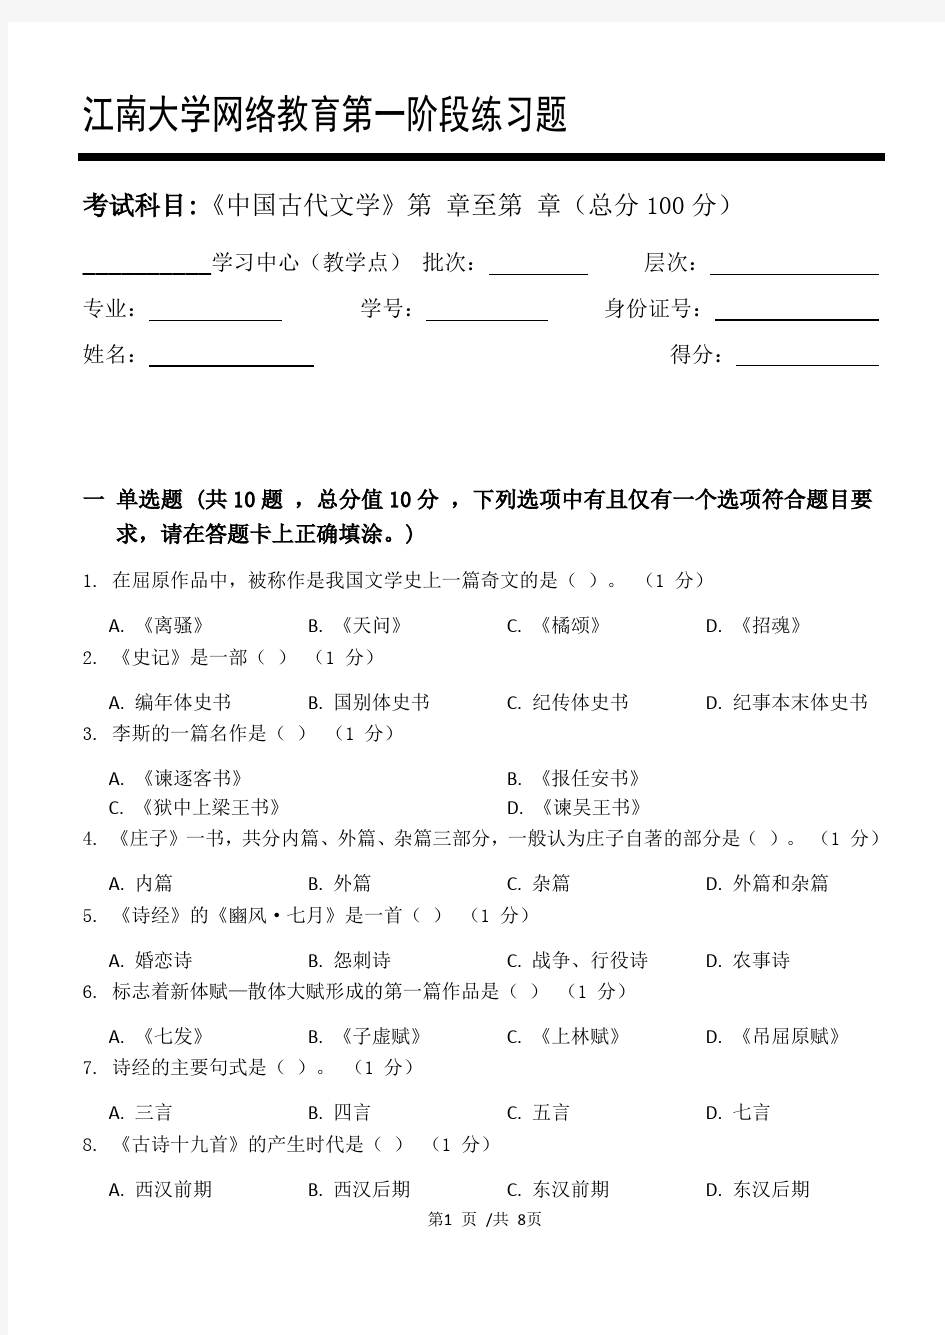 中国古代文学第1阶段练习题江大考试题库及答案一科共有三个阶段,这是其中一个阶段。答案在最